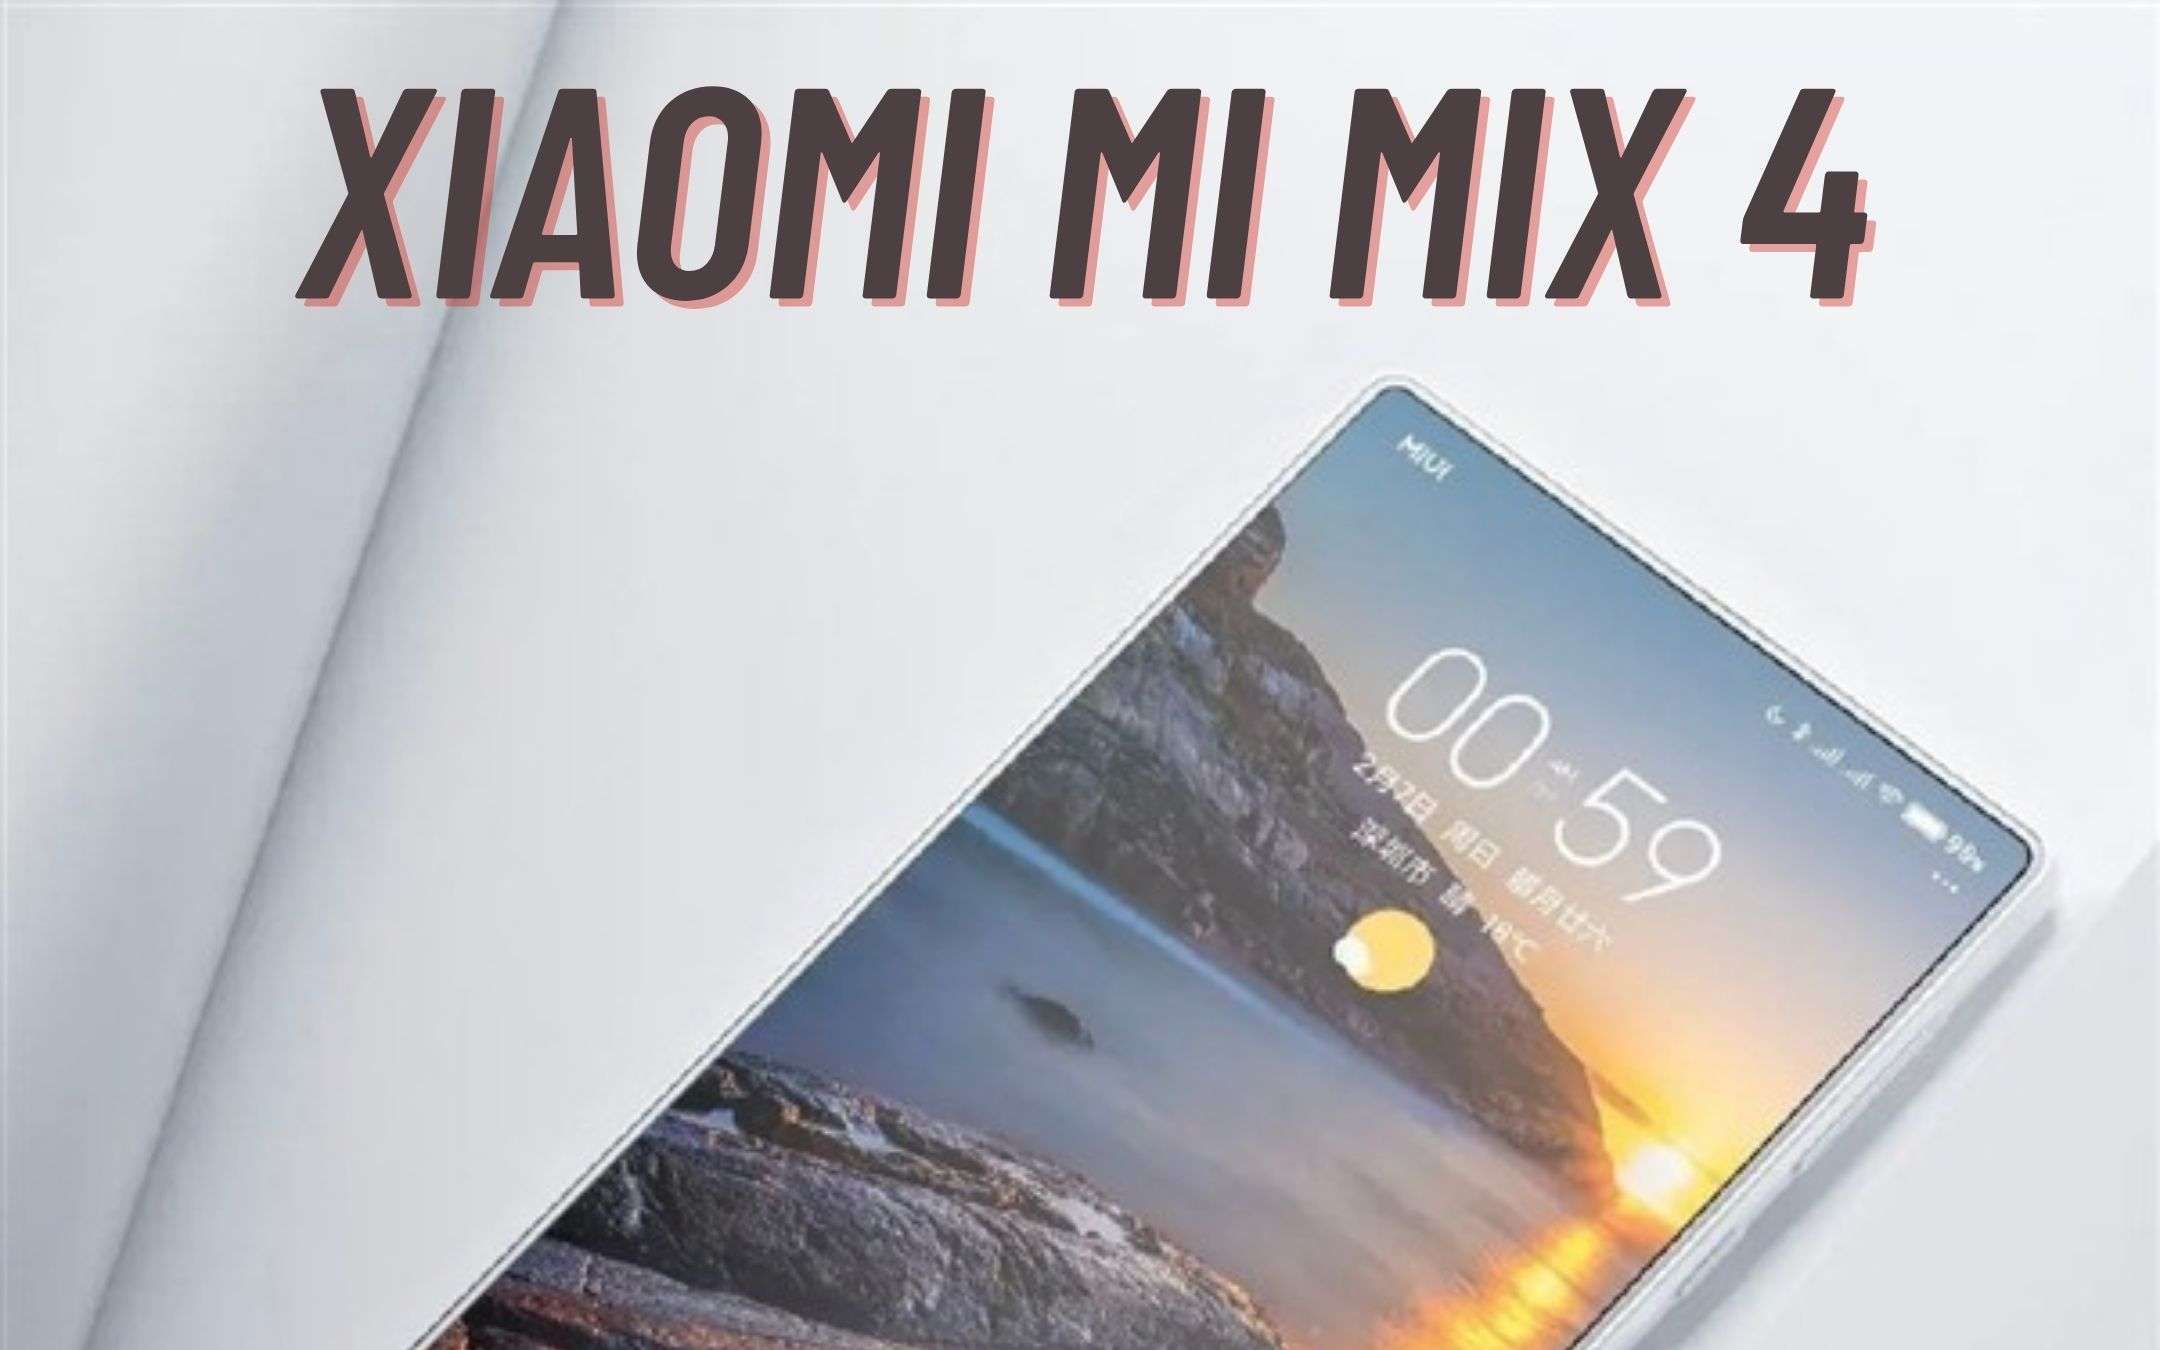 Xiaomi Mi Mix 4: nome in codice? ODINO!